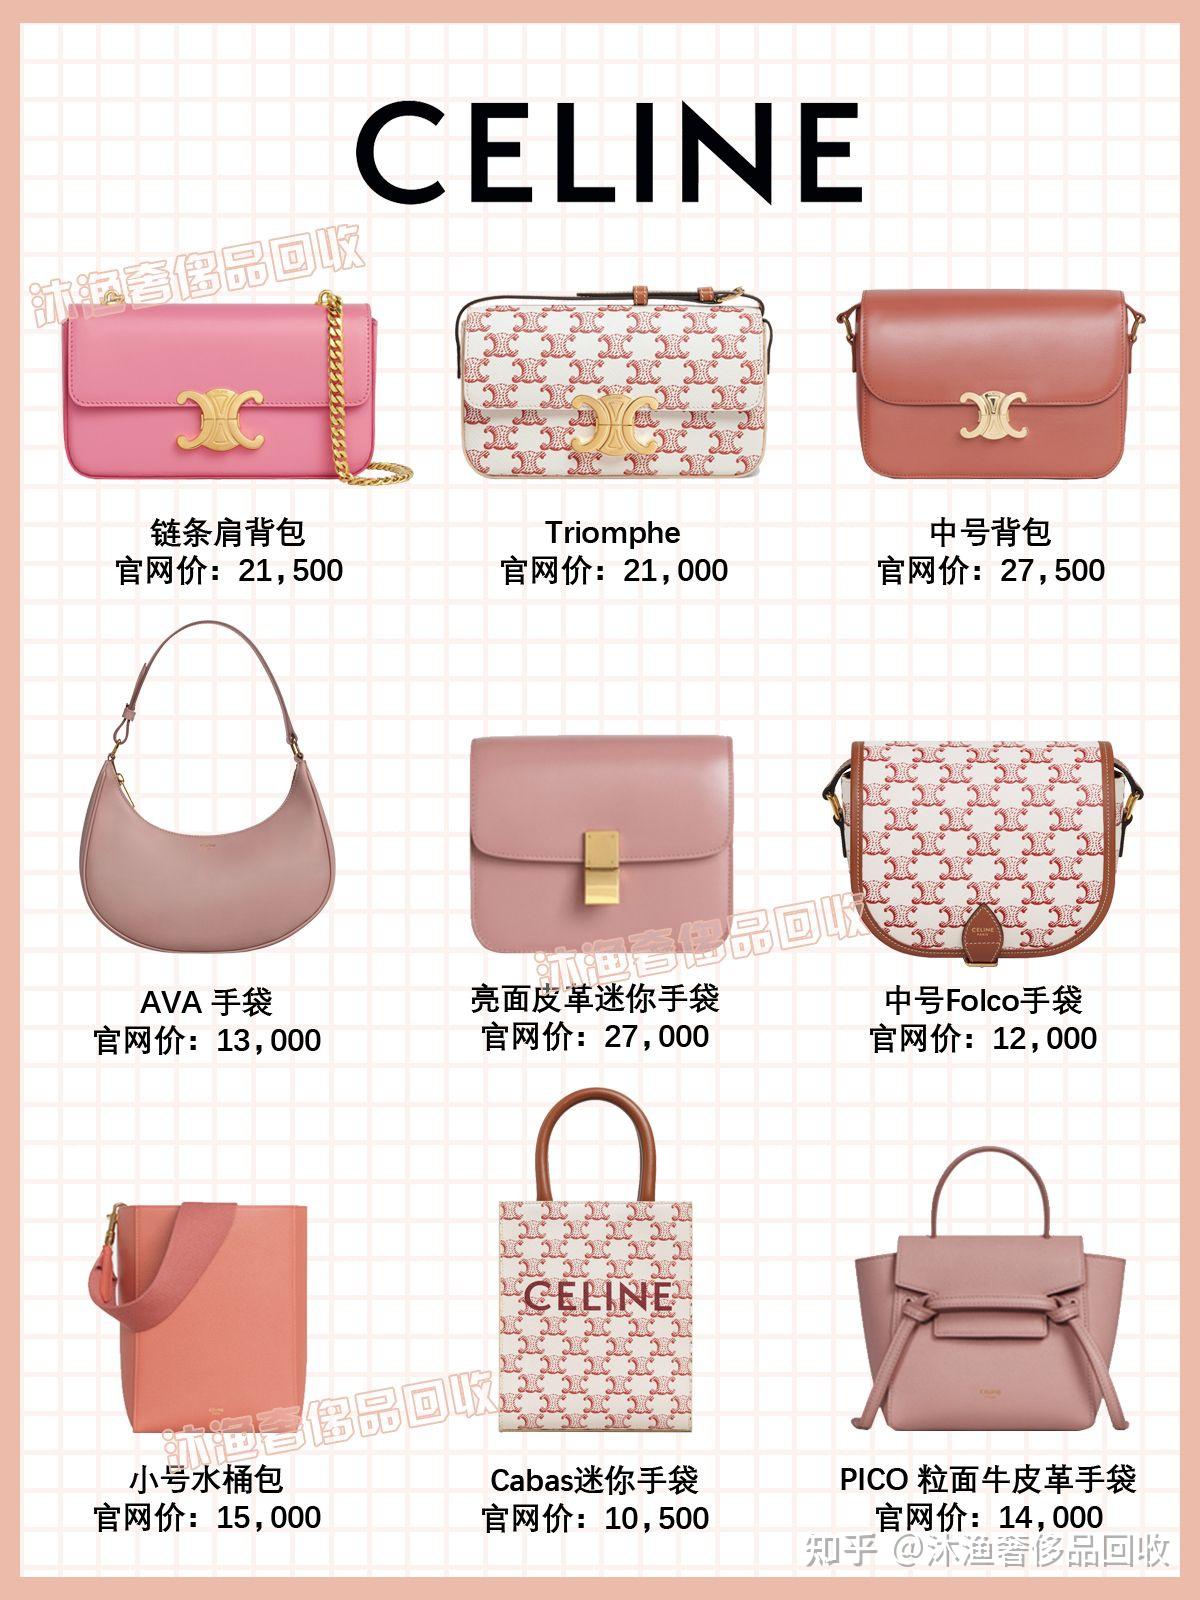 粉色少女迷你小包 YSL潮流经典款包包 圣罗兰女包价格和图片 - 七七奢侈品